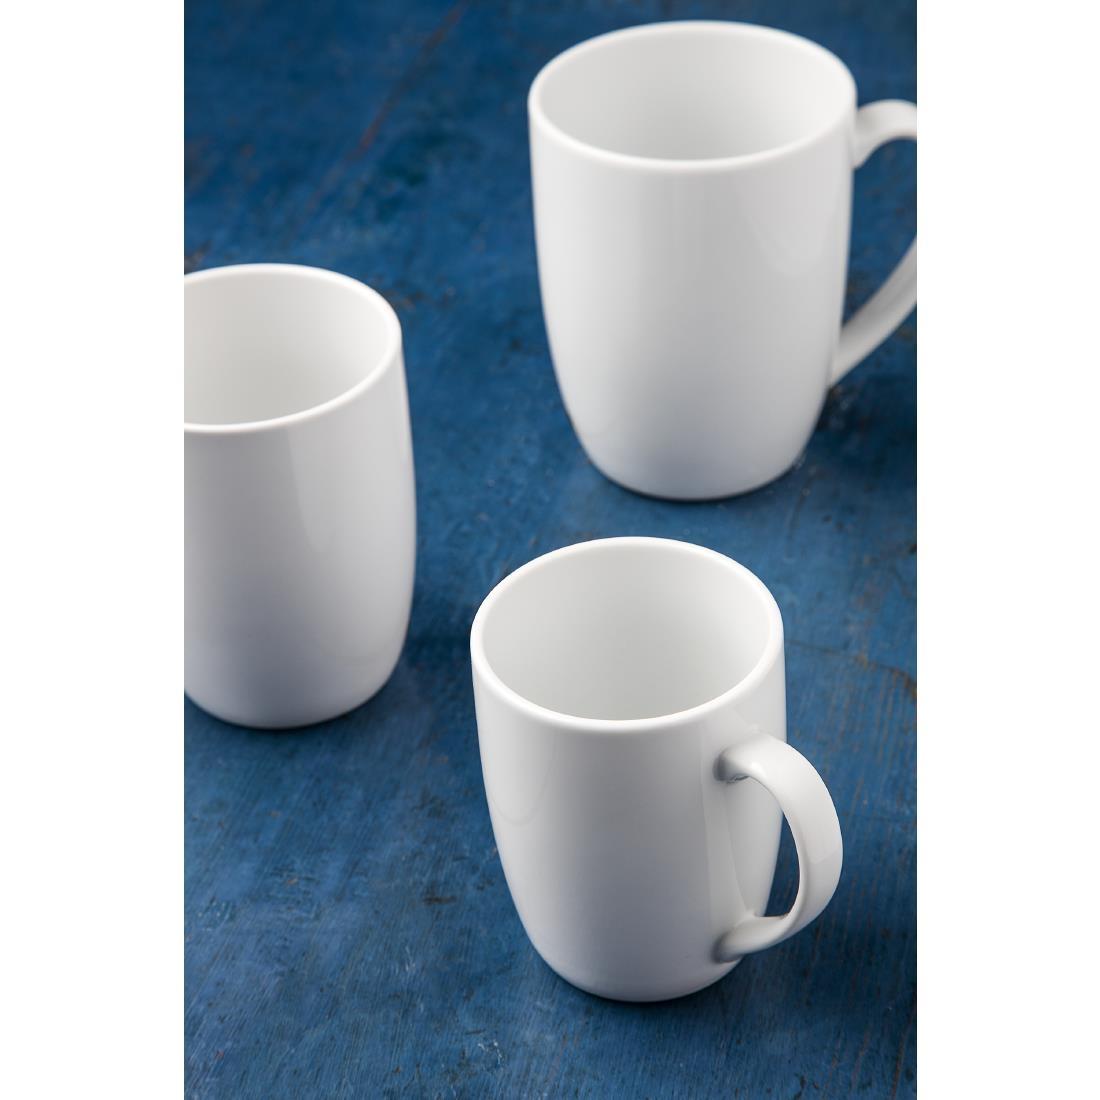 Royal Porcelain Classic White Mug 350ml (Pack of 12) - GT945  - 3